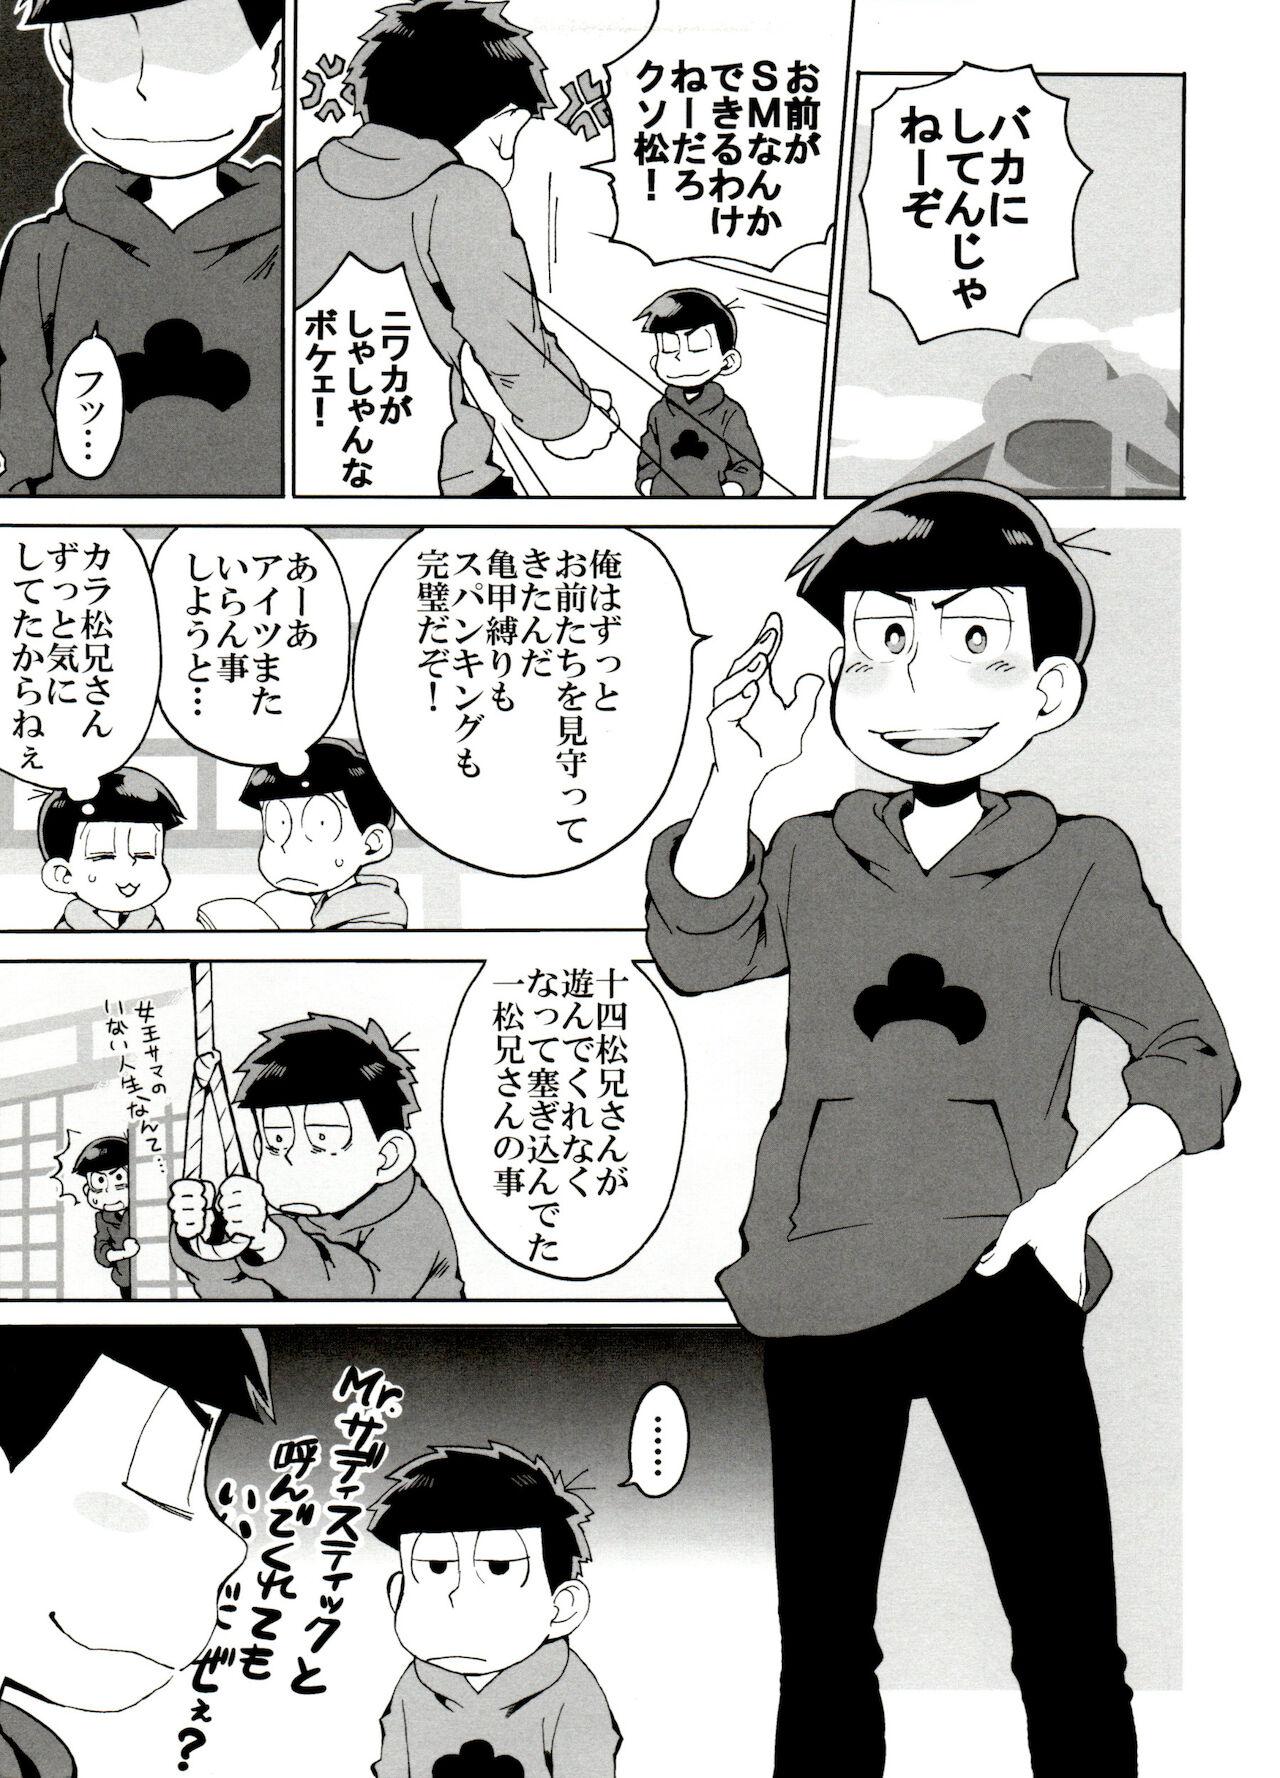 Blackmail SM Matsu 2 - Osomatsu-san Exhibition - Page 5